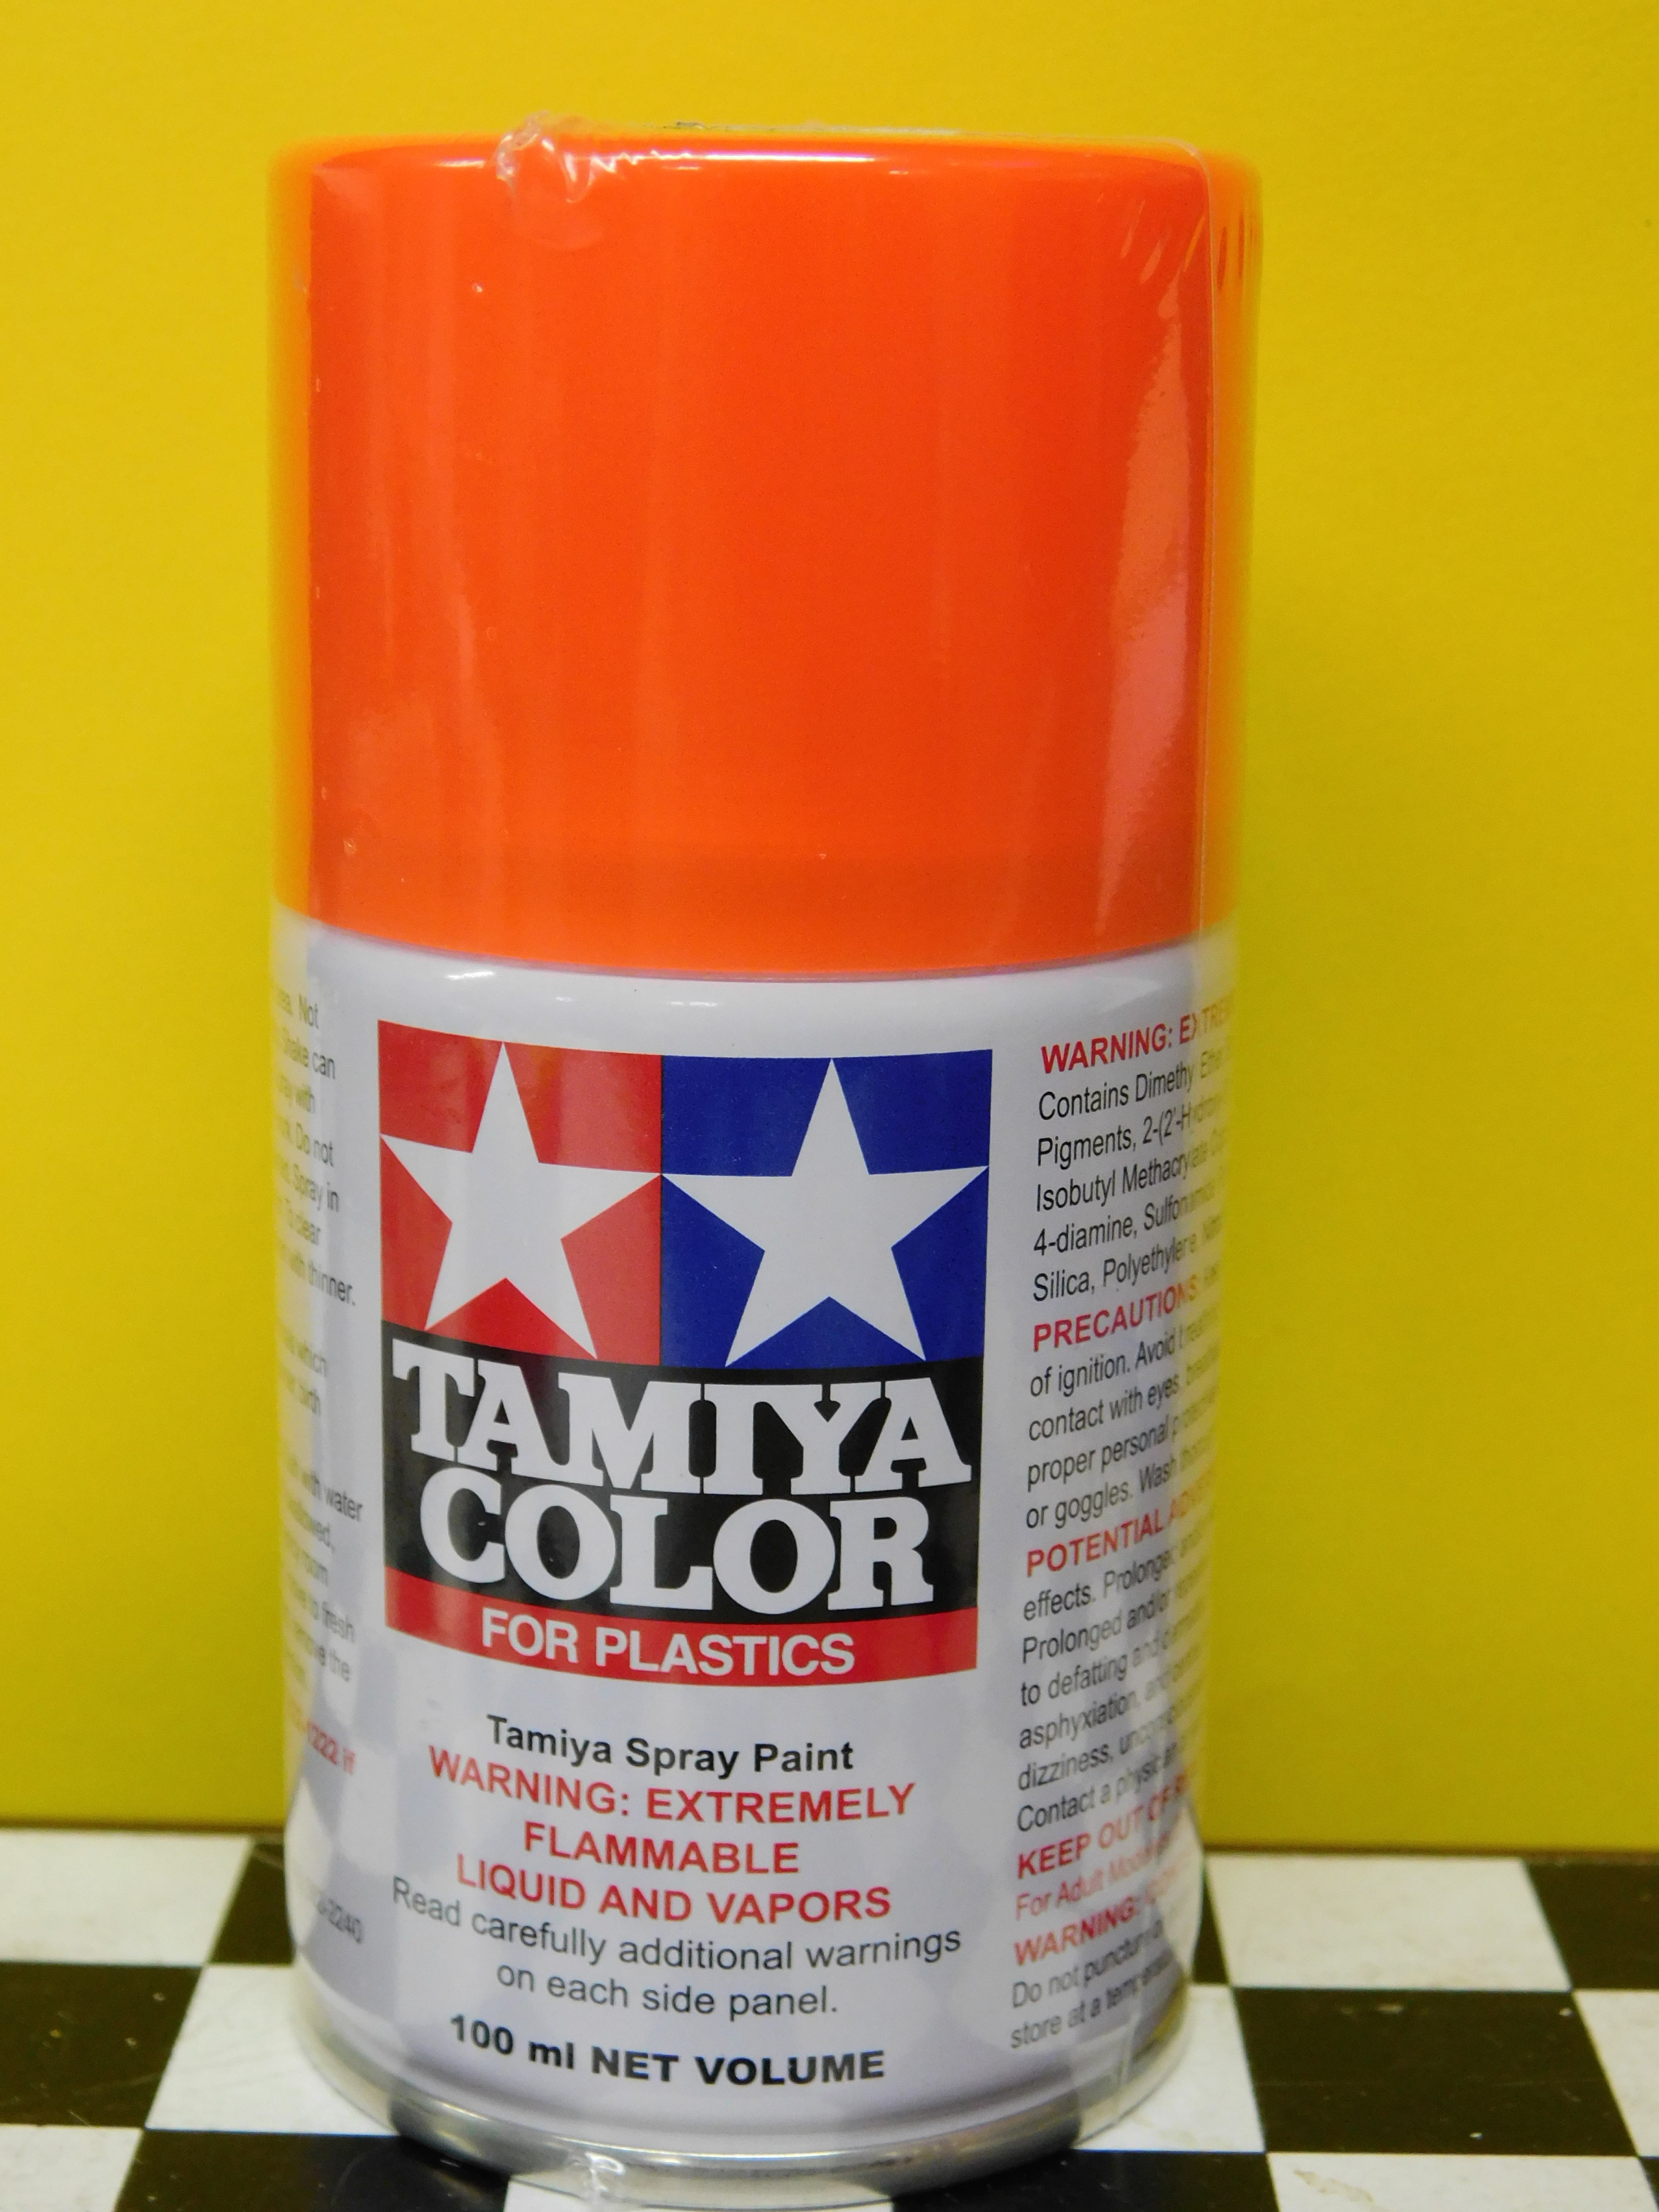 TAMIYA #85031: TS-31 BRIGHT ORANGE Plastic Model Paint, 3 oz Spray